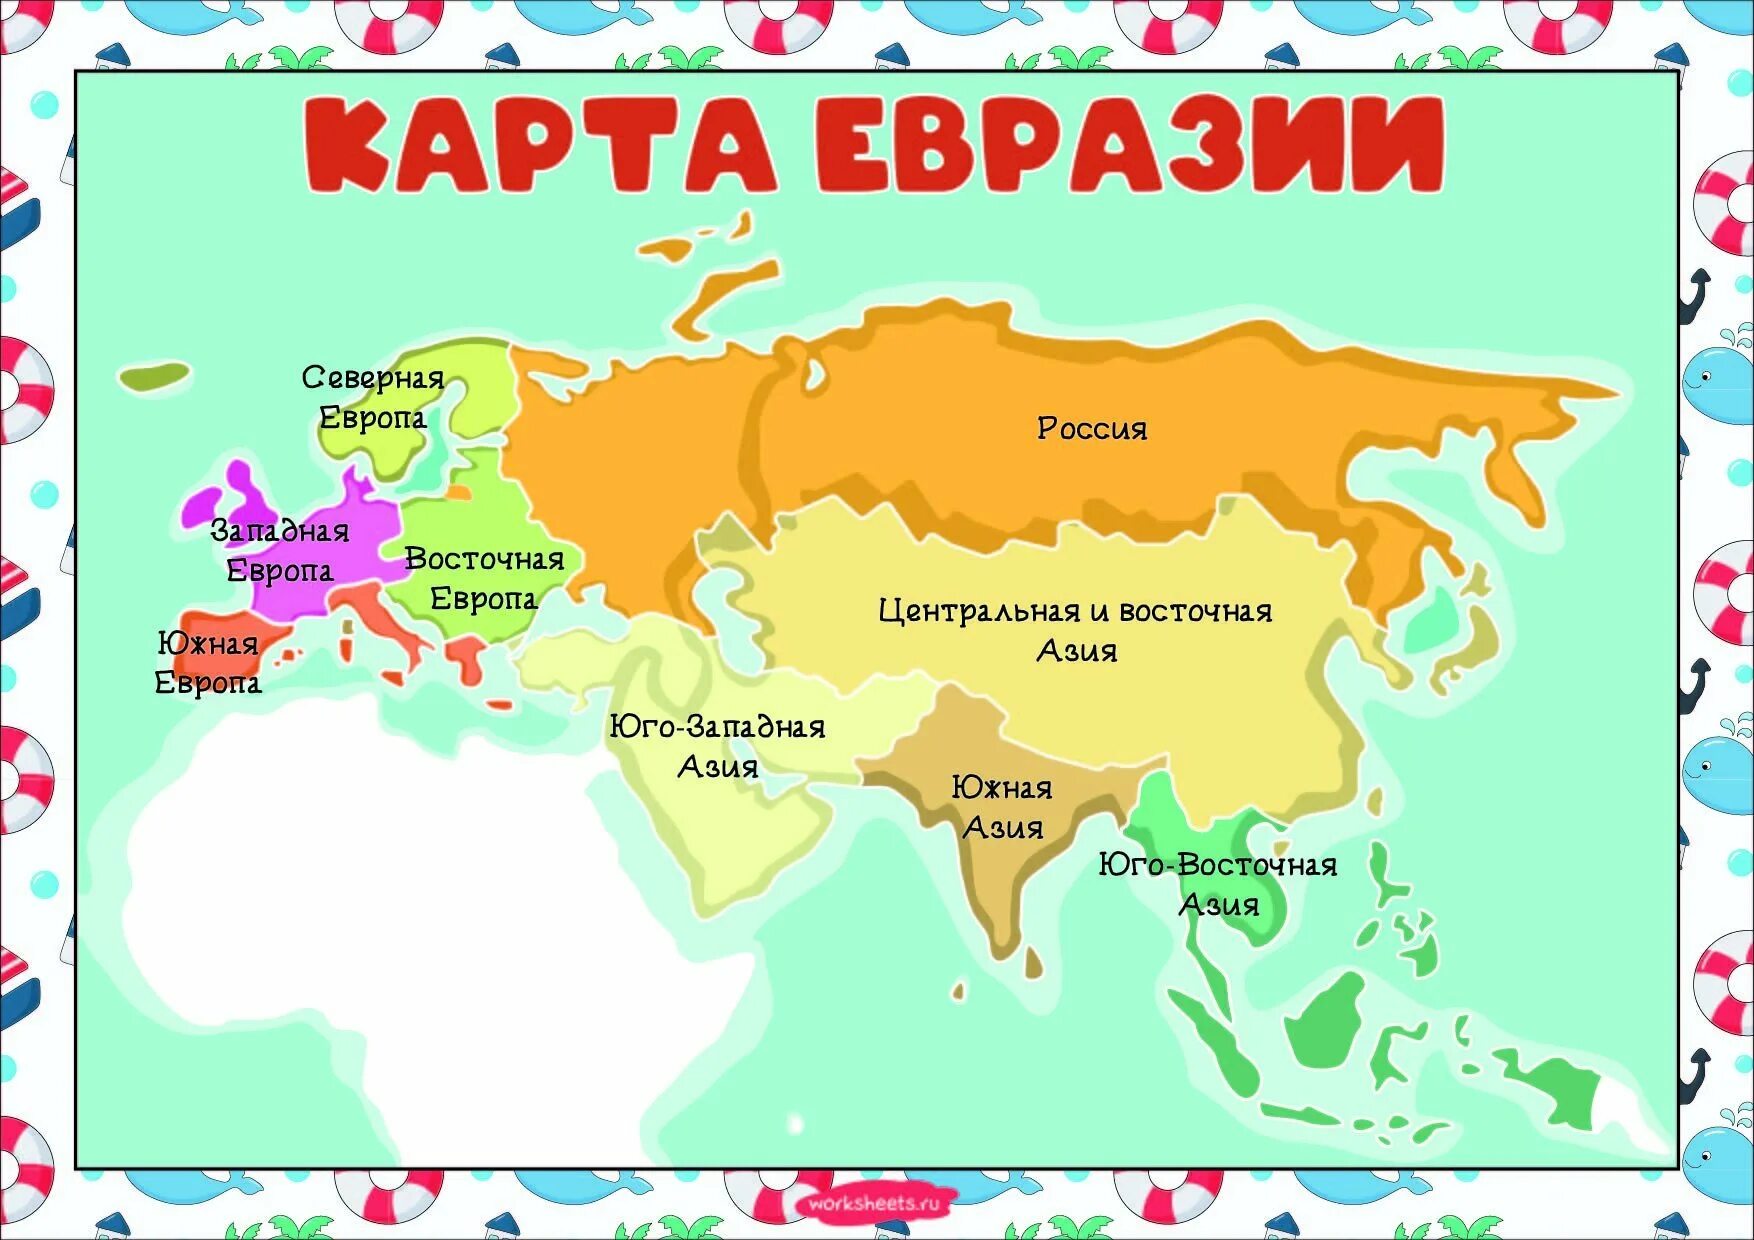 Название карты евразии